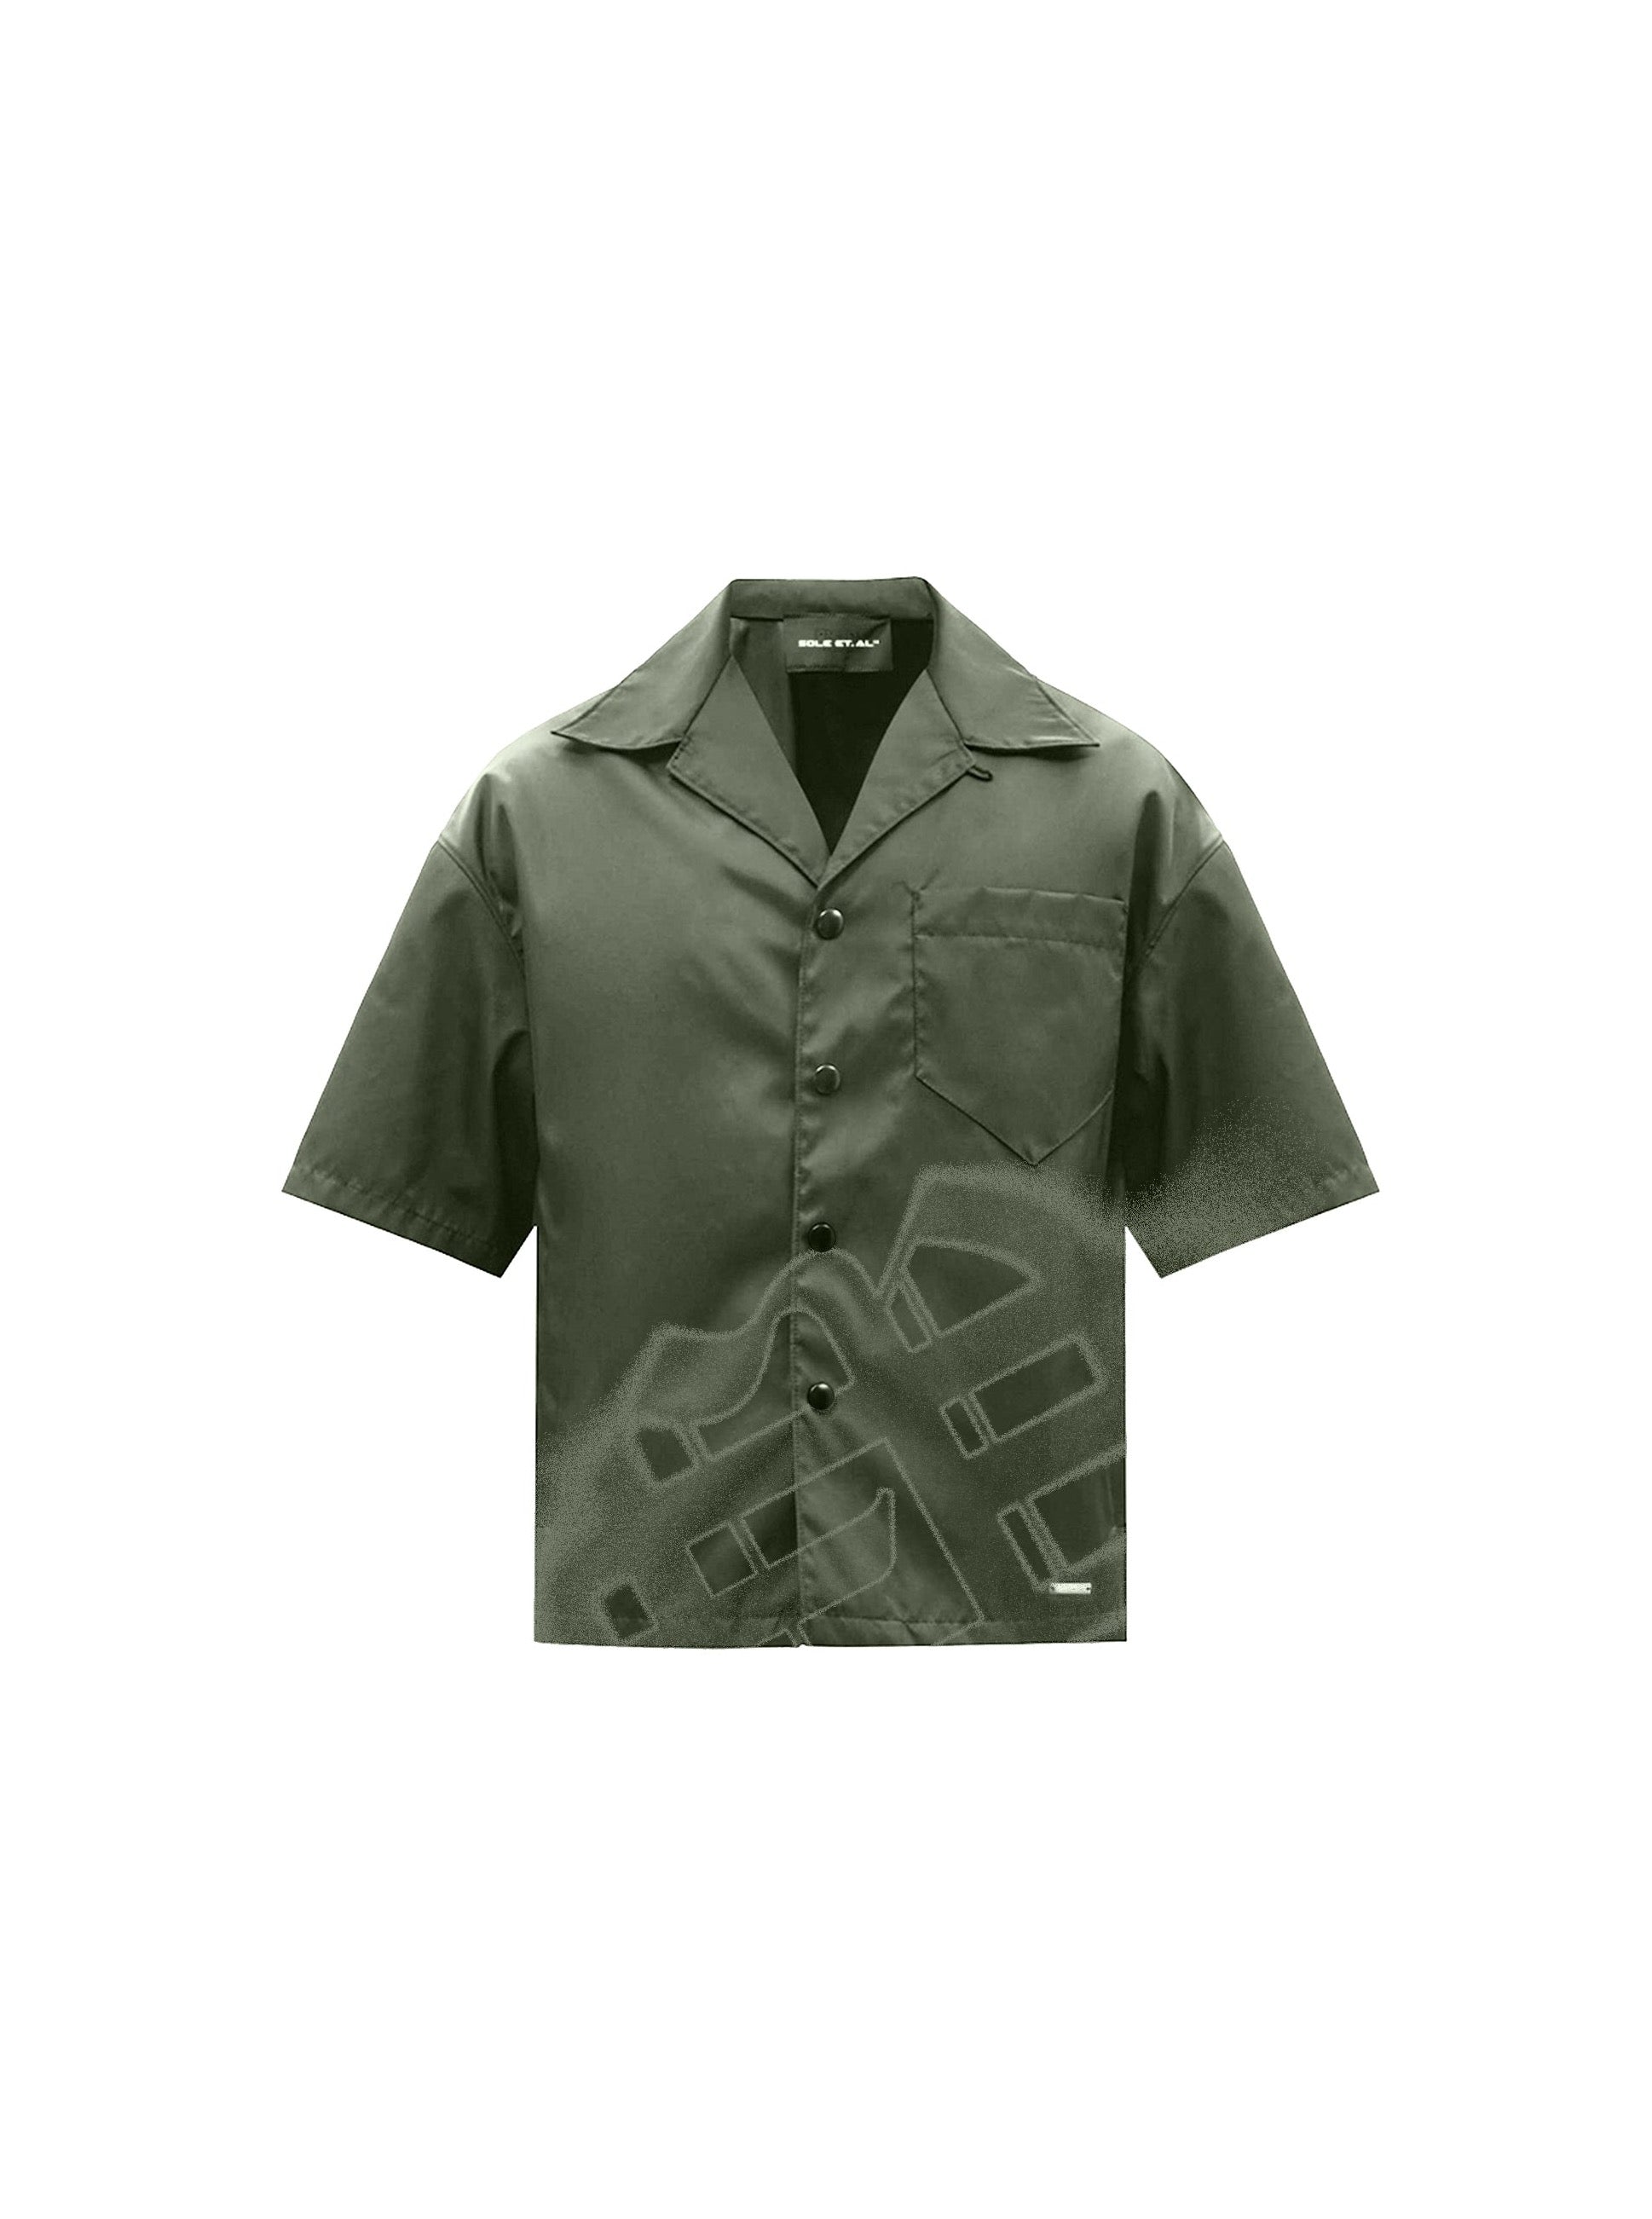 Sole et. Al Revølutiøn Silk Shirt : Military Green